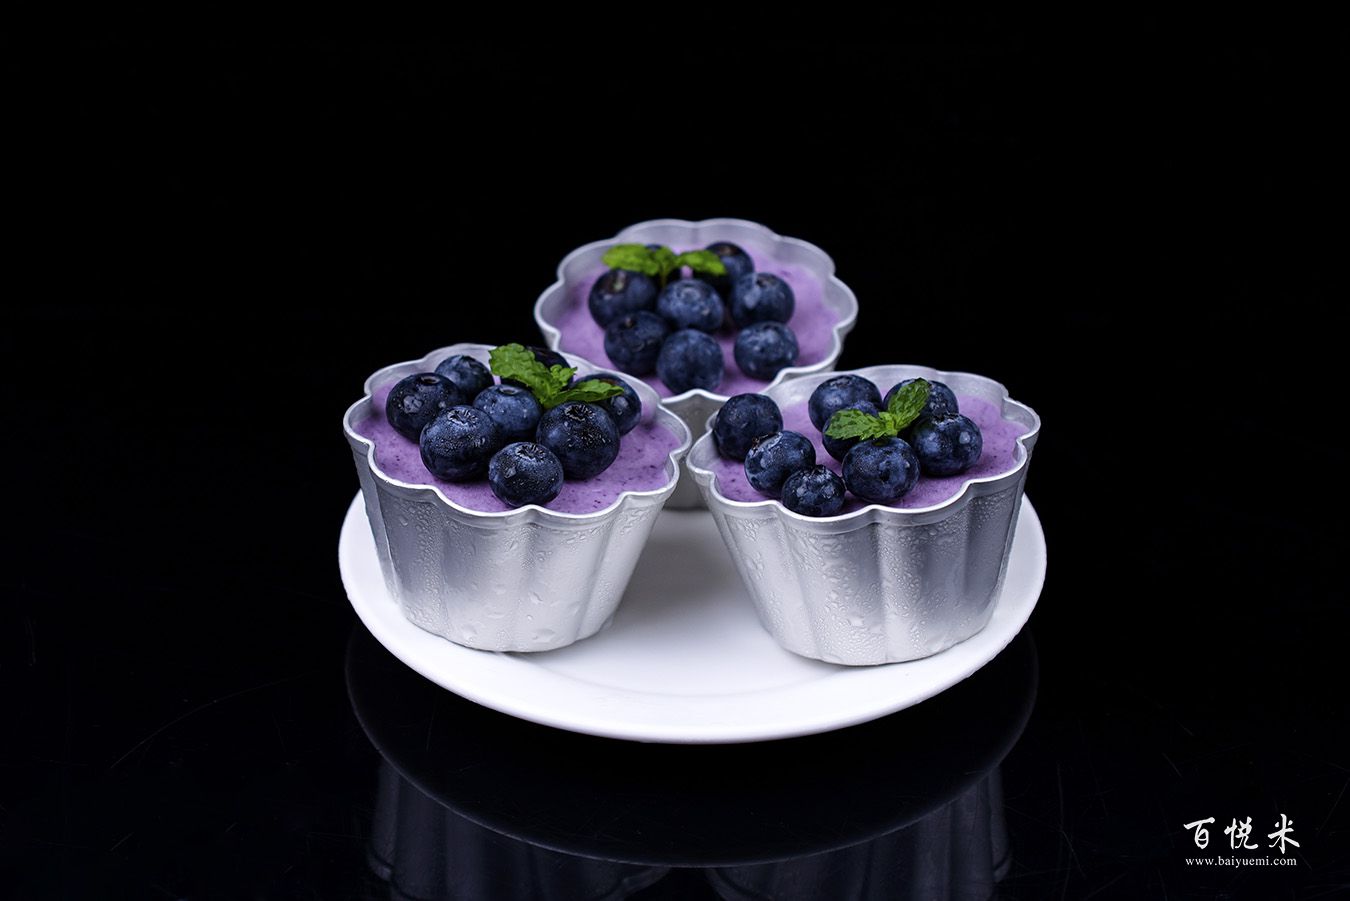 蓝莓冻芝士蛋糕的做法视频大全_西点培训学习教程